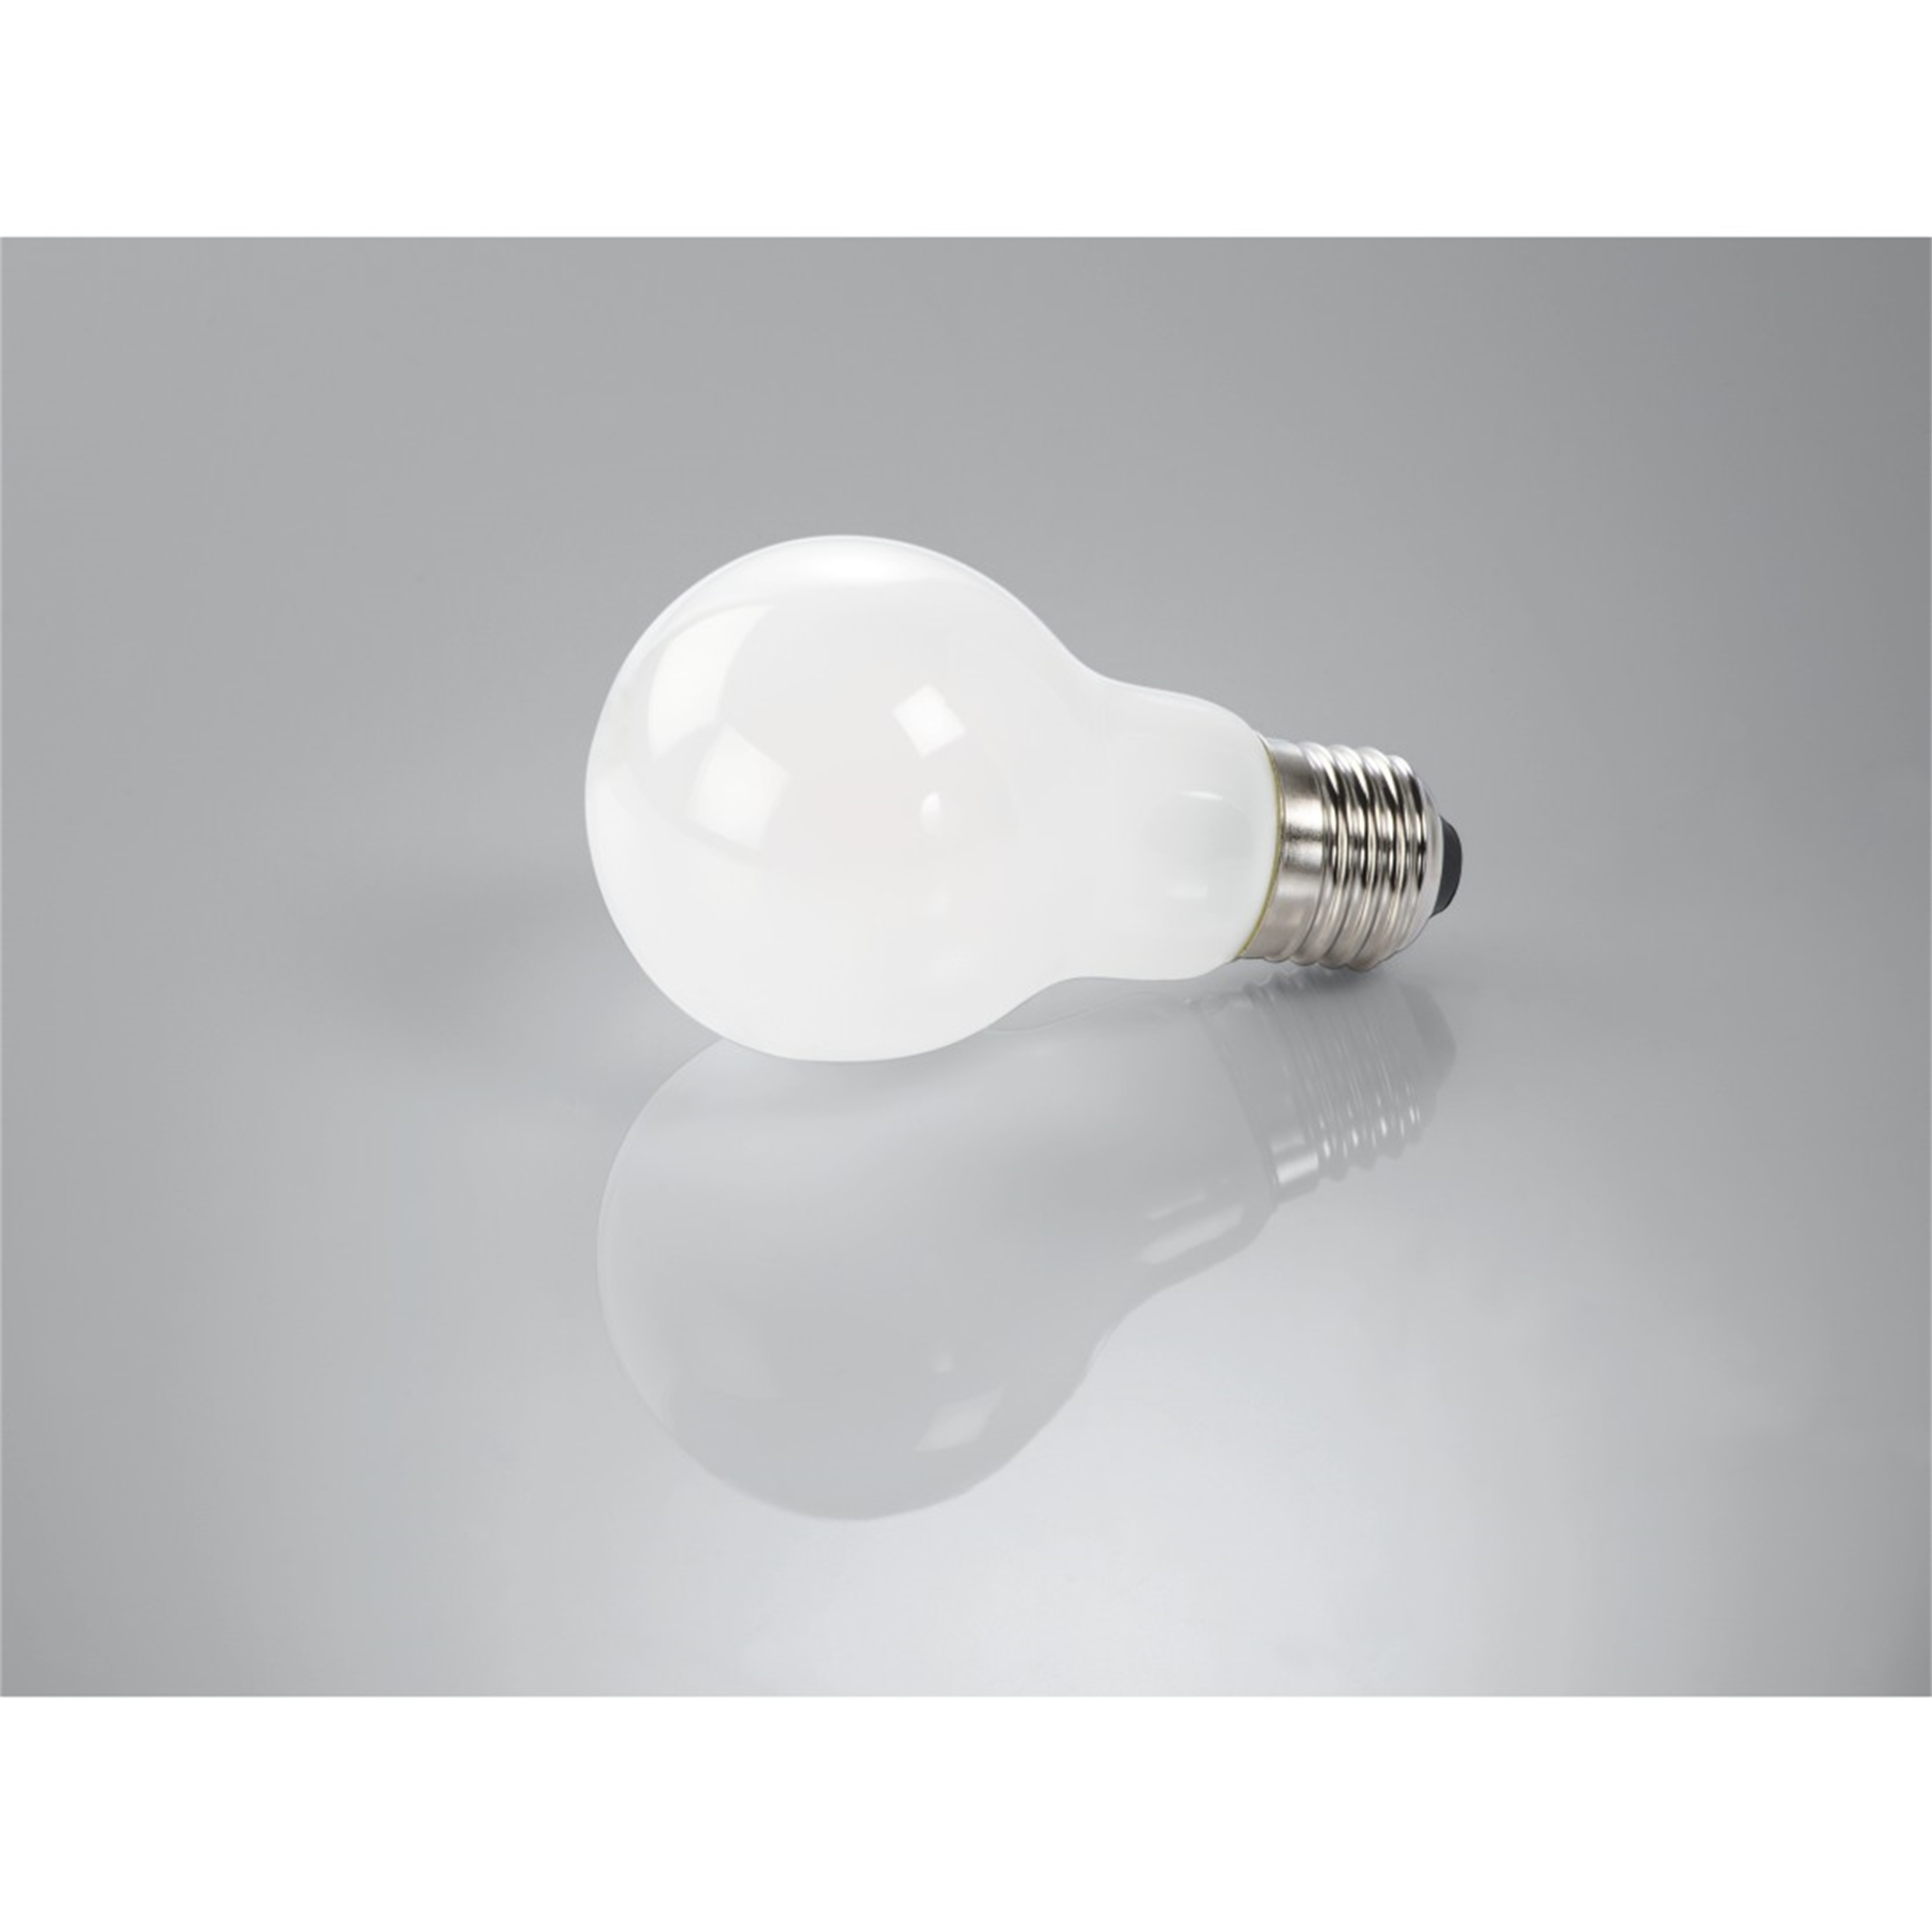 XAVAX E27, 60W 806lm E27 Warmweiß LED-Lampe ersetzt